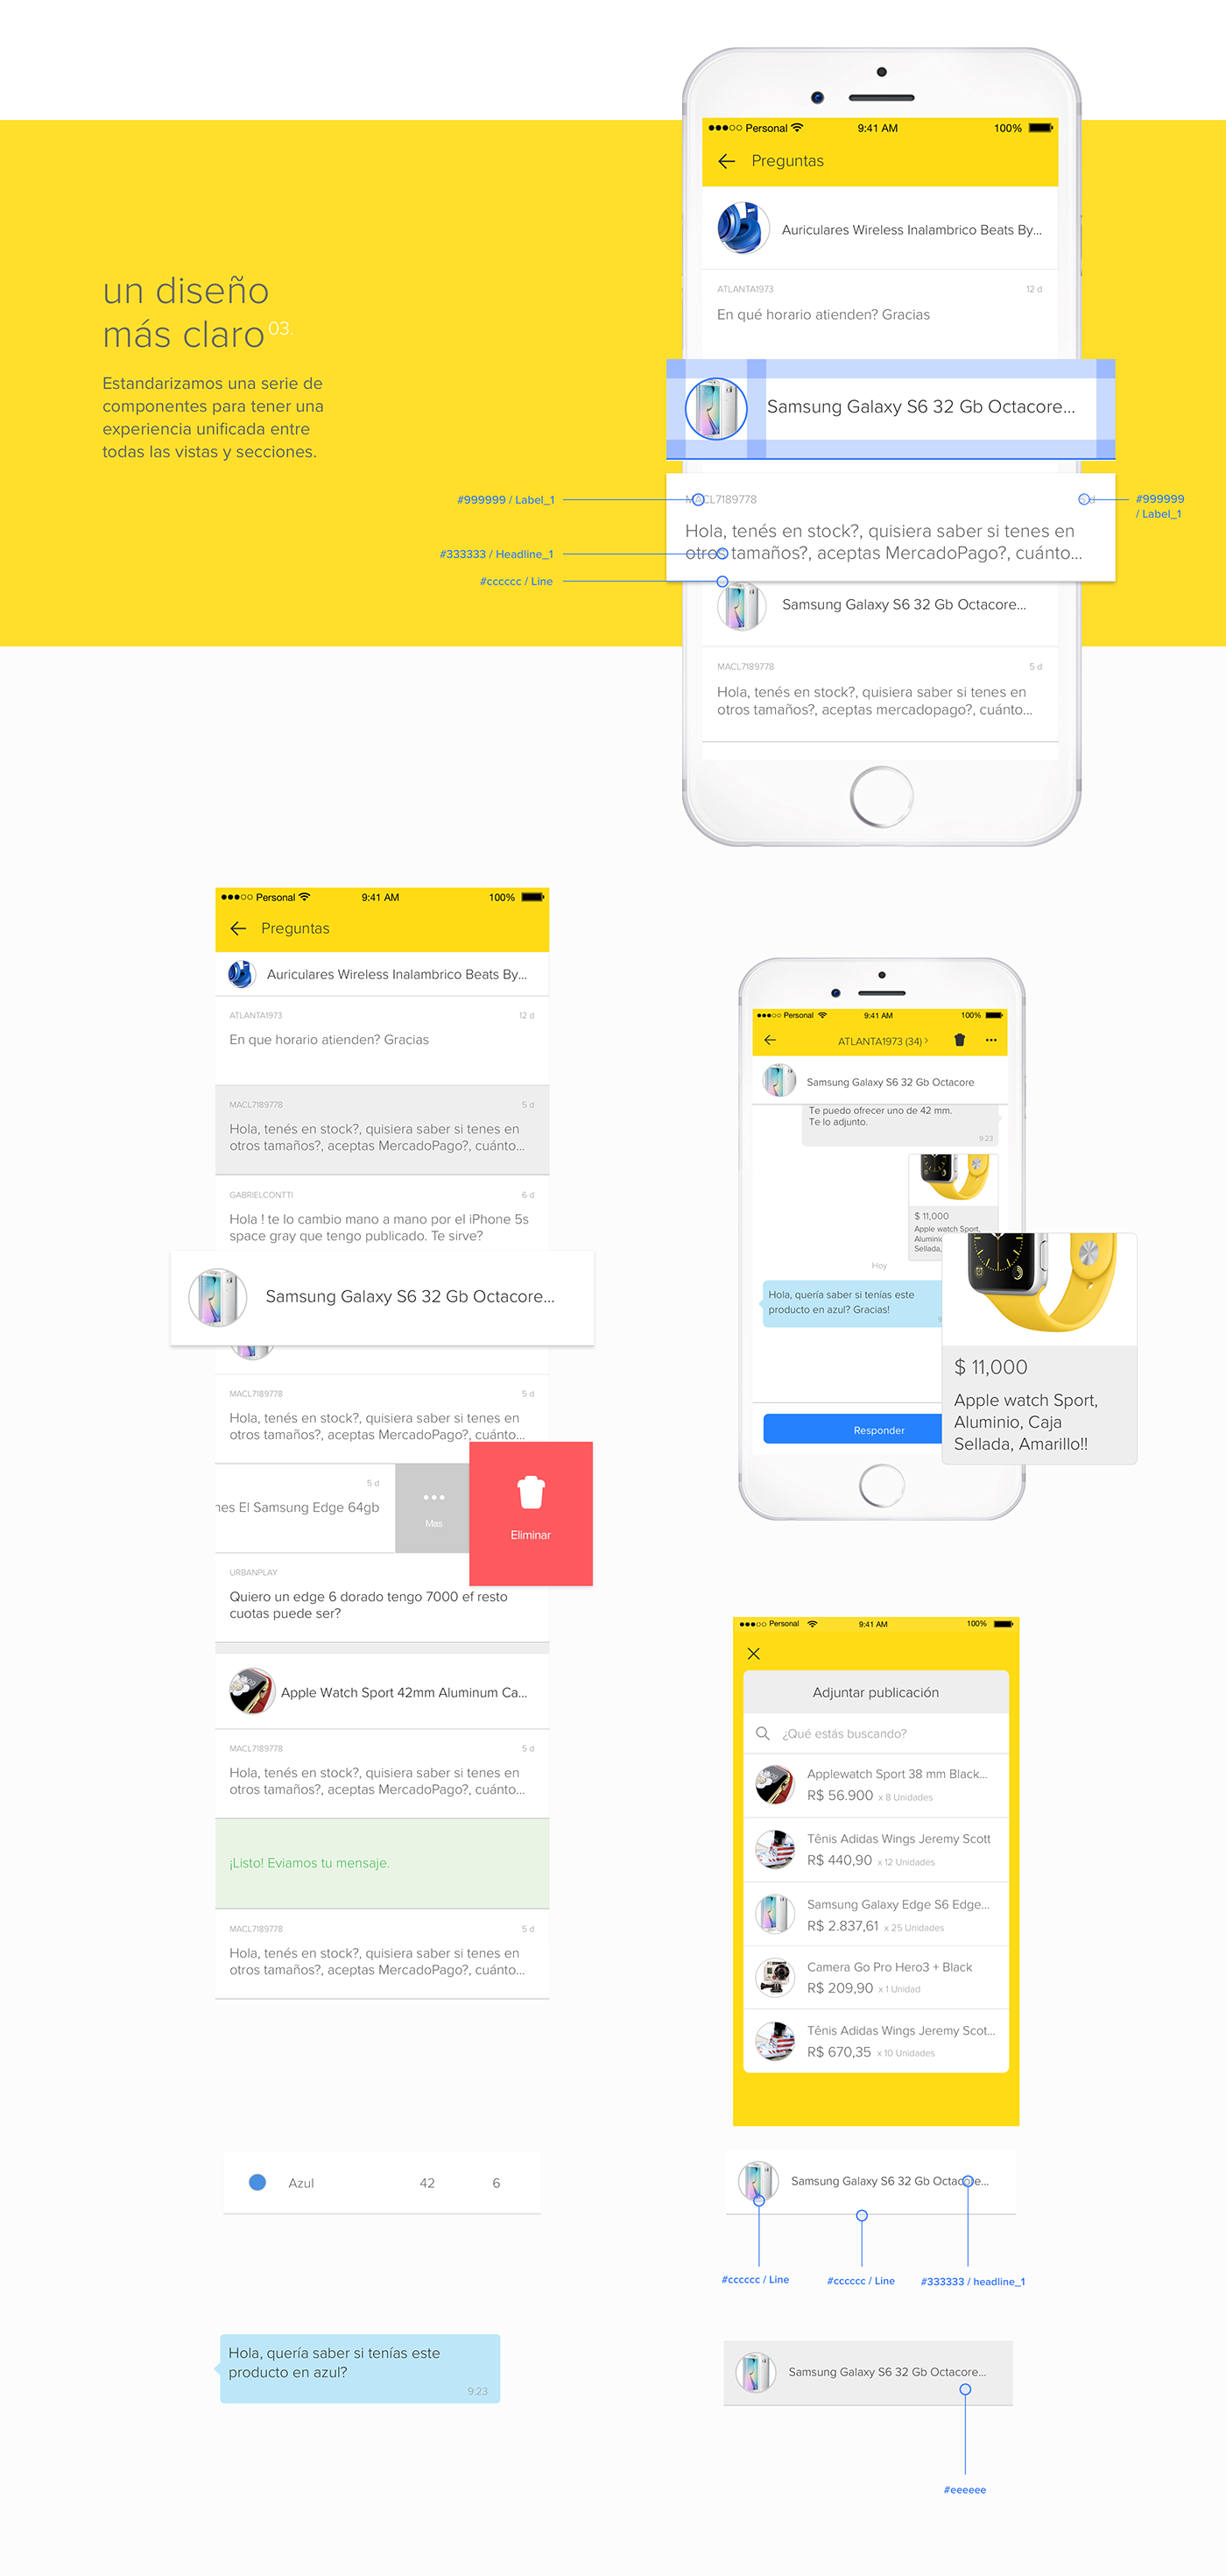 ui ux mobile Mercadolibre app flow ilustraciones vistas ios interfaz design diseño yellow amarillo MERCADO LIBRE interaction